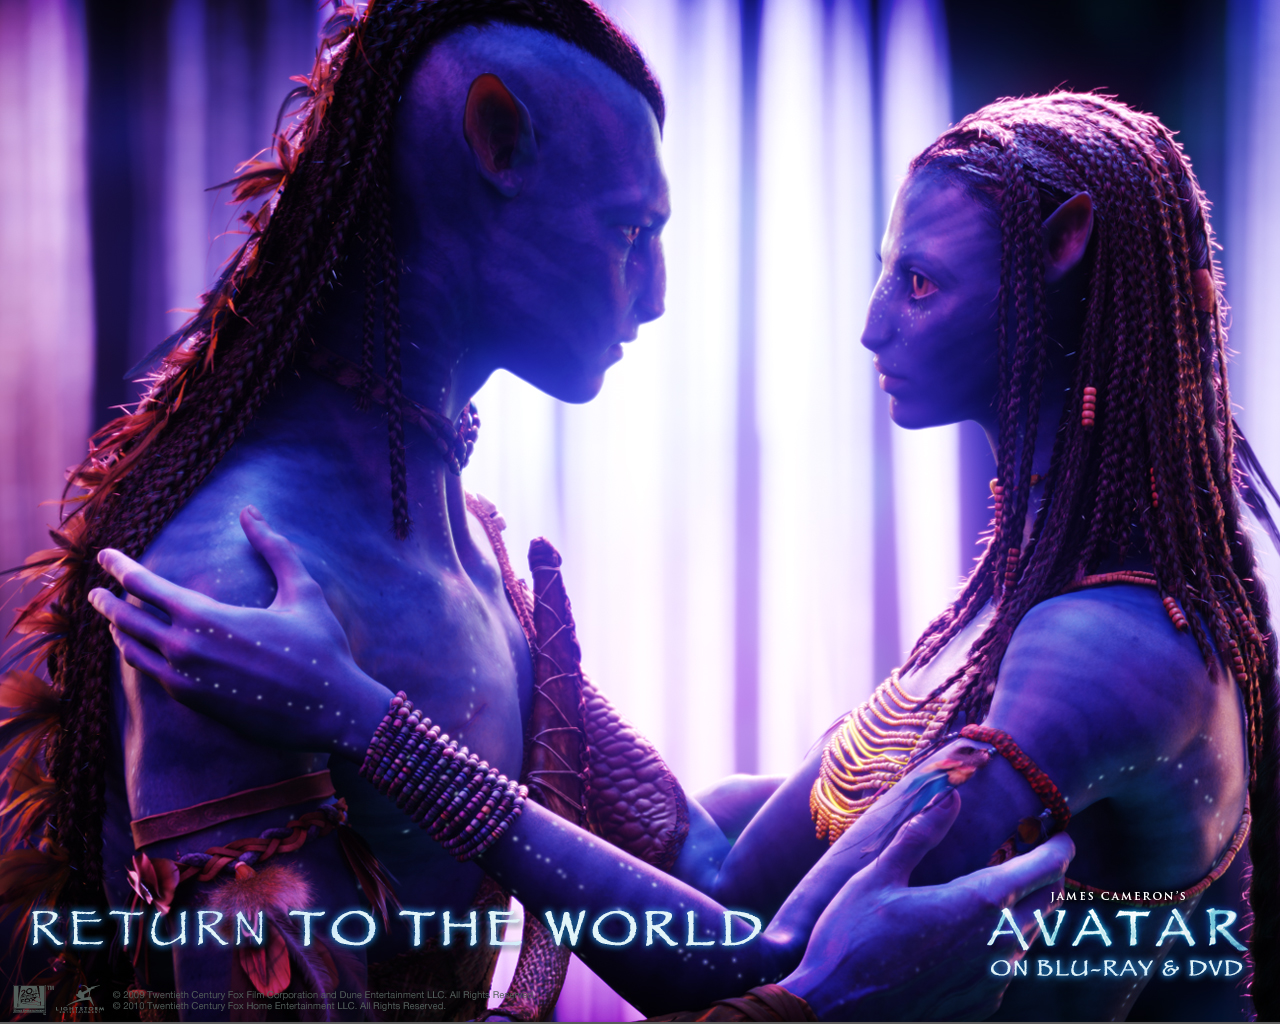  Neytiri (Avatar) HQ Background Images